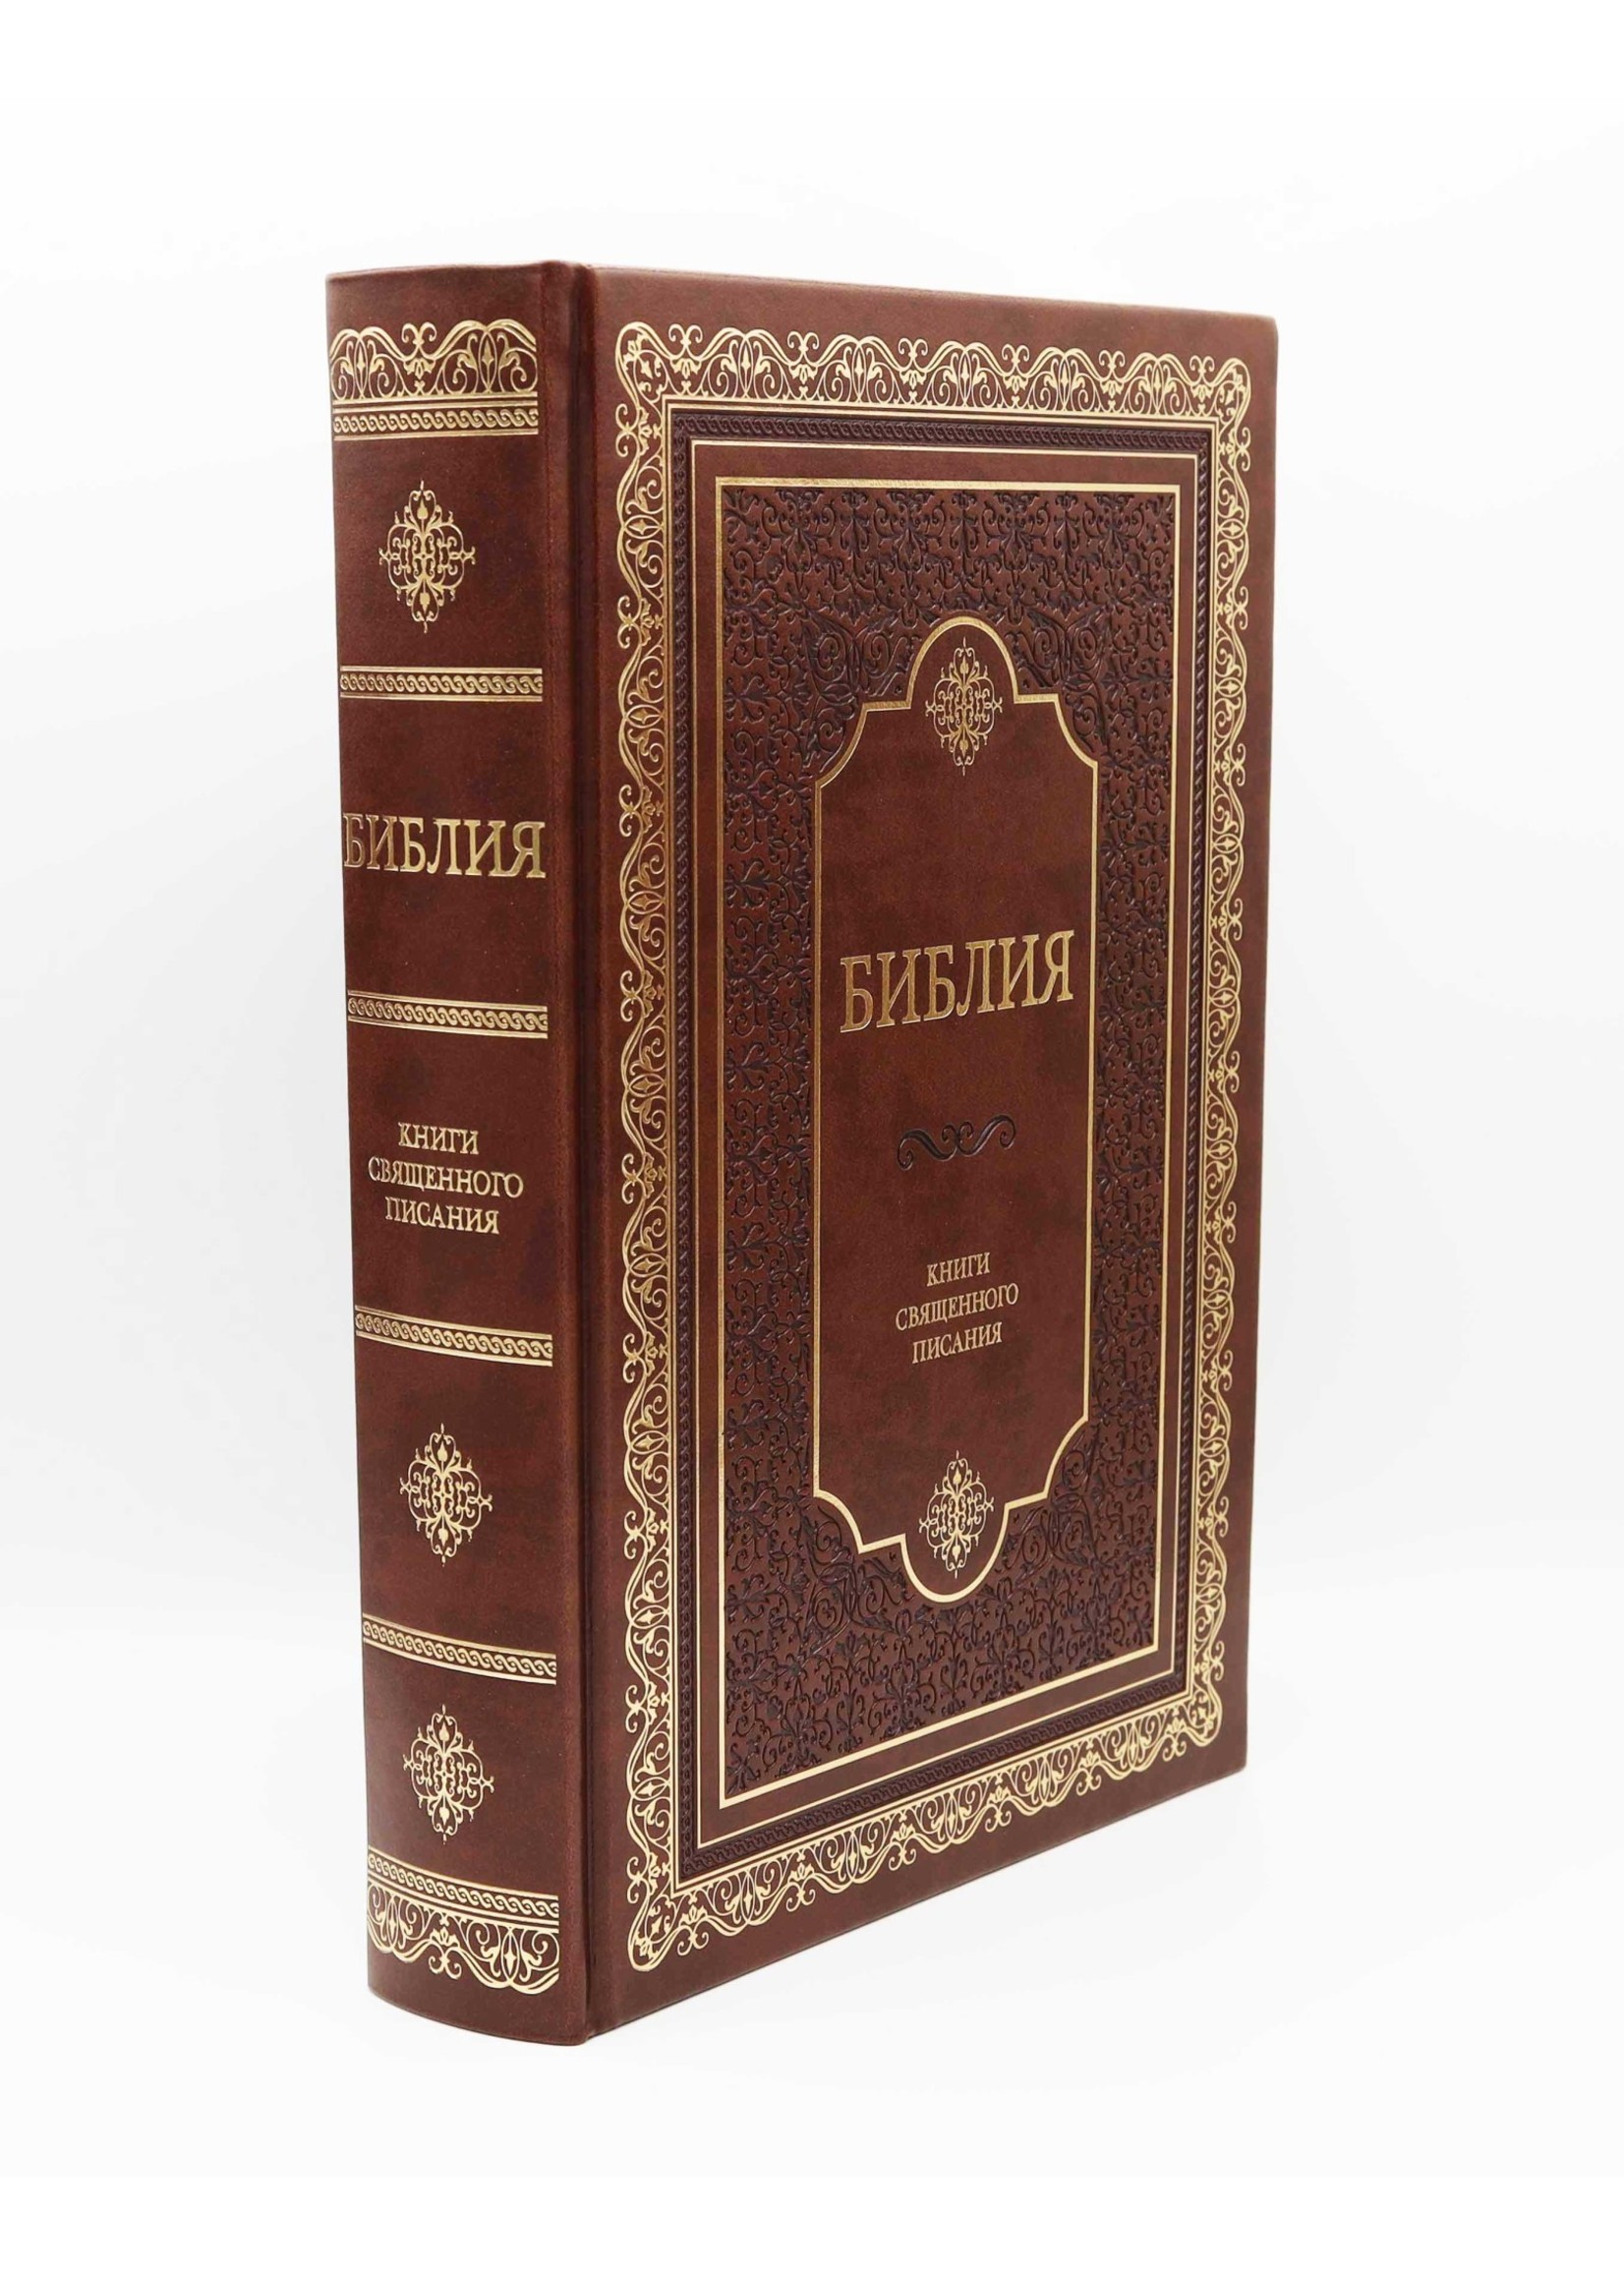 Библия, Каноническая, Настольная с Индексом,  Brown Leather, Hardcover